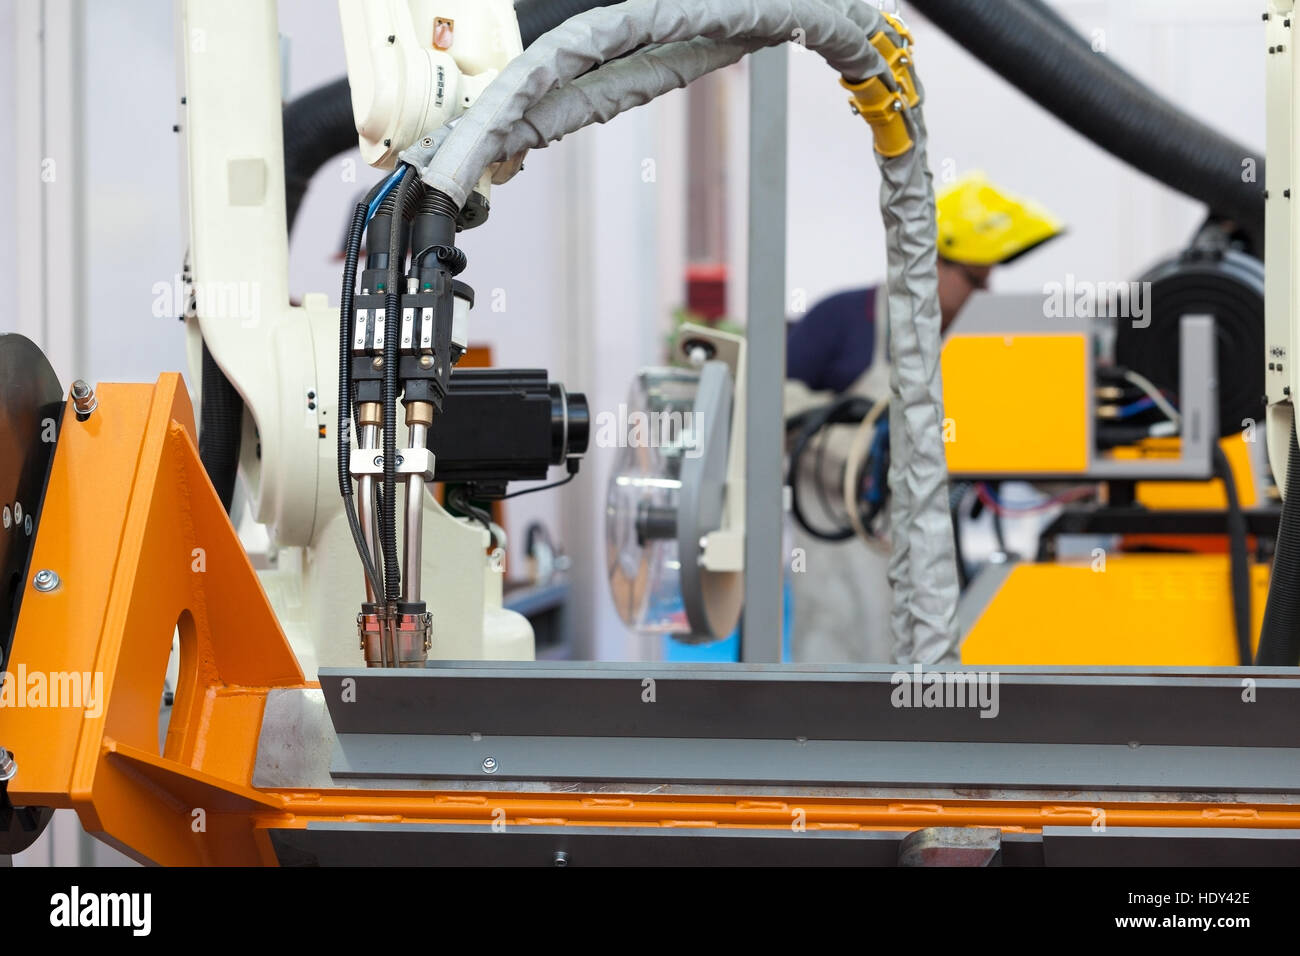 Industrial welding robotic arm Stock Photo